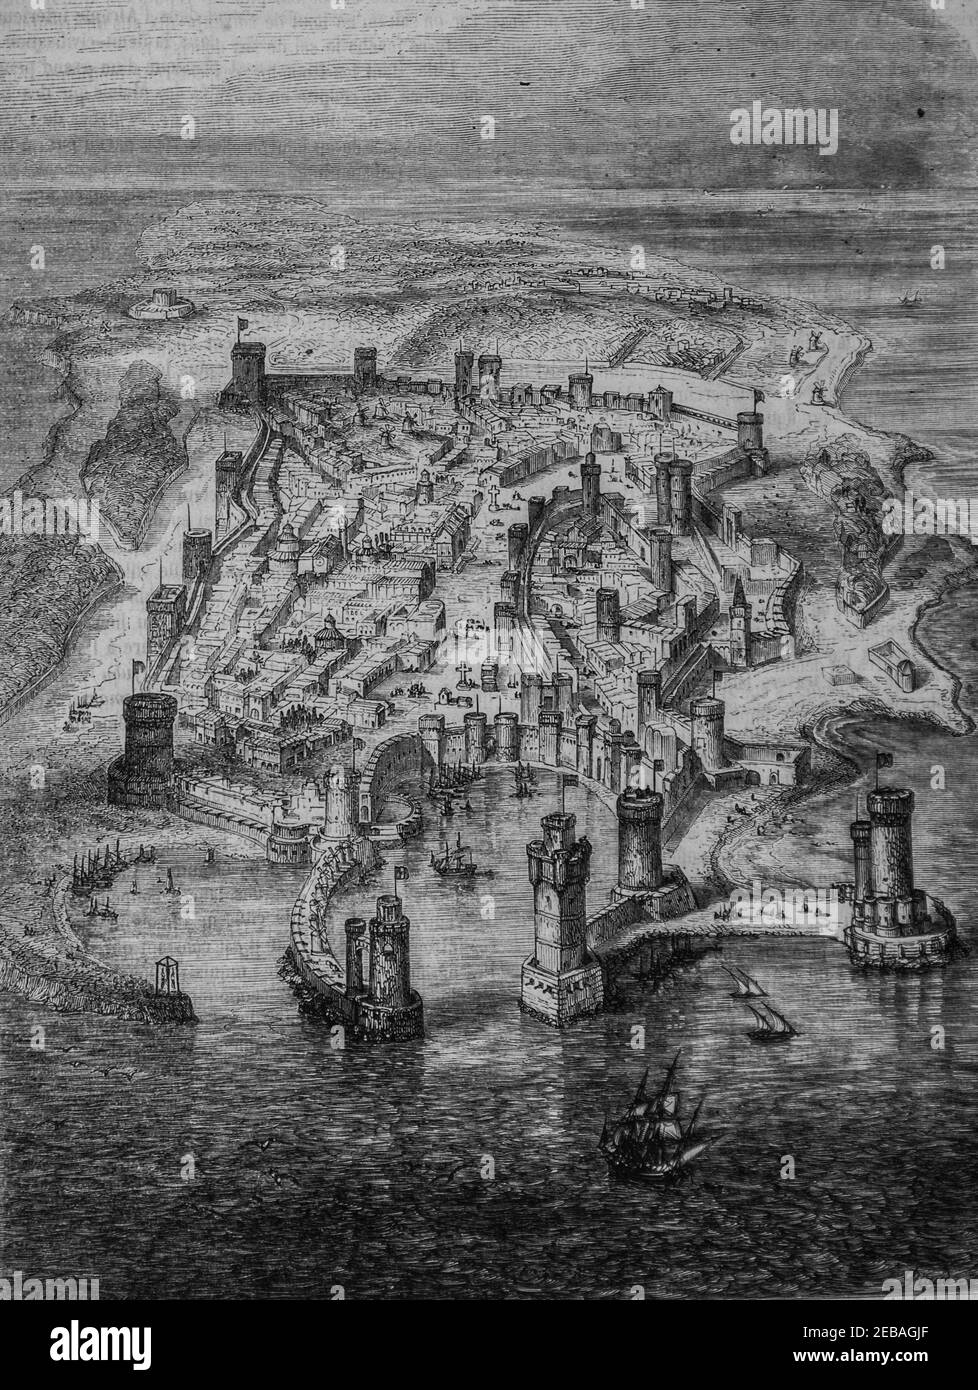 vue de rhode en 1480 , le Magazine pittoresque par edouard charton 1855 Stockfoto